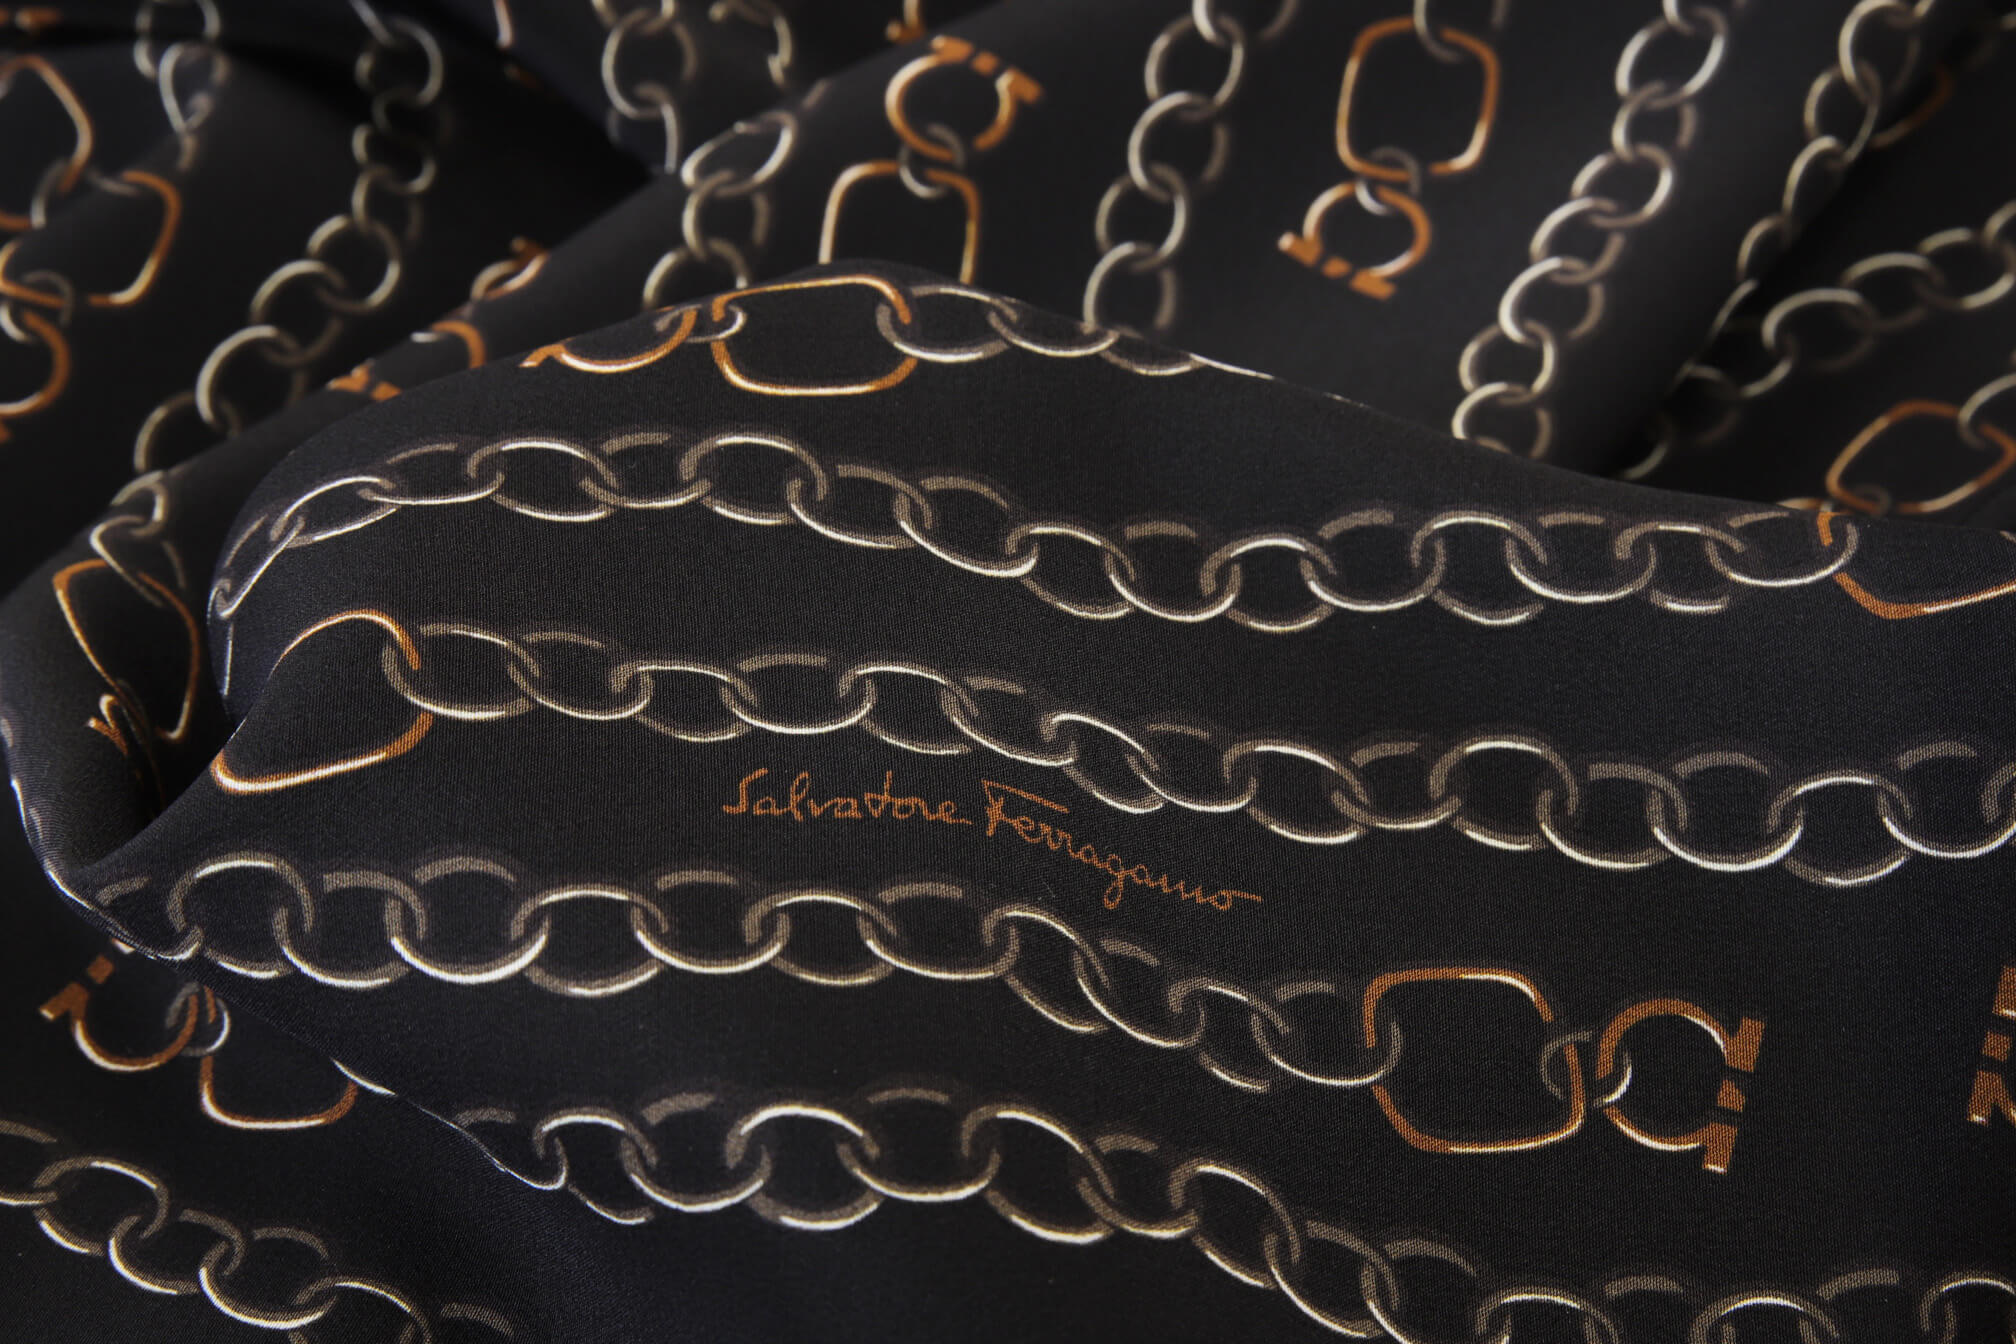 Шелковый крепдешин Salvatore Ferragamo, цвет Черный, фото 1